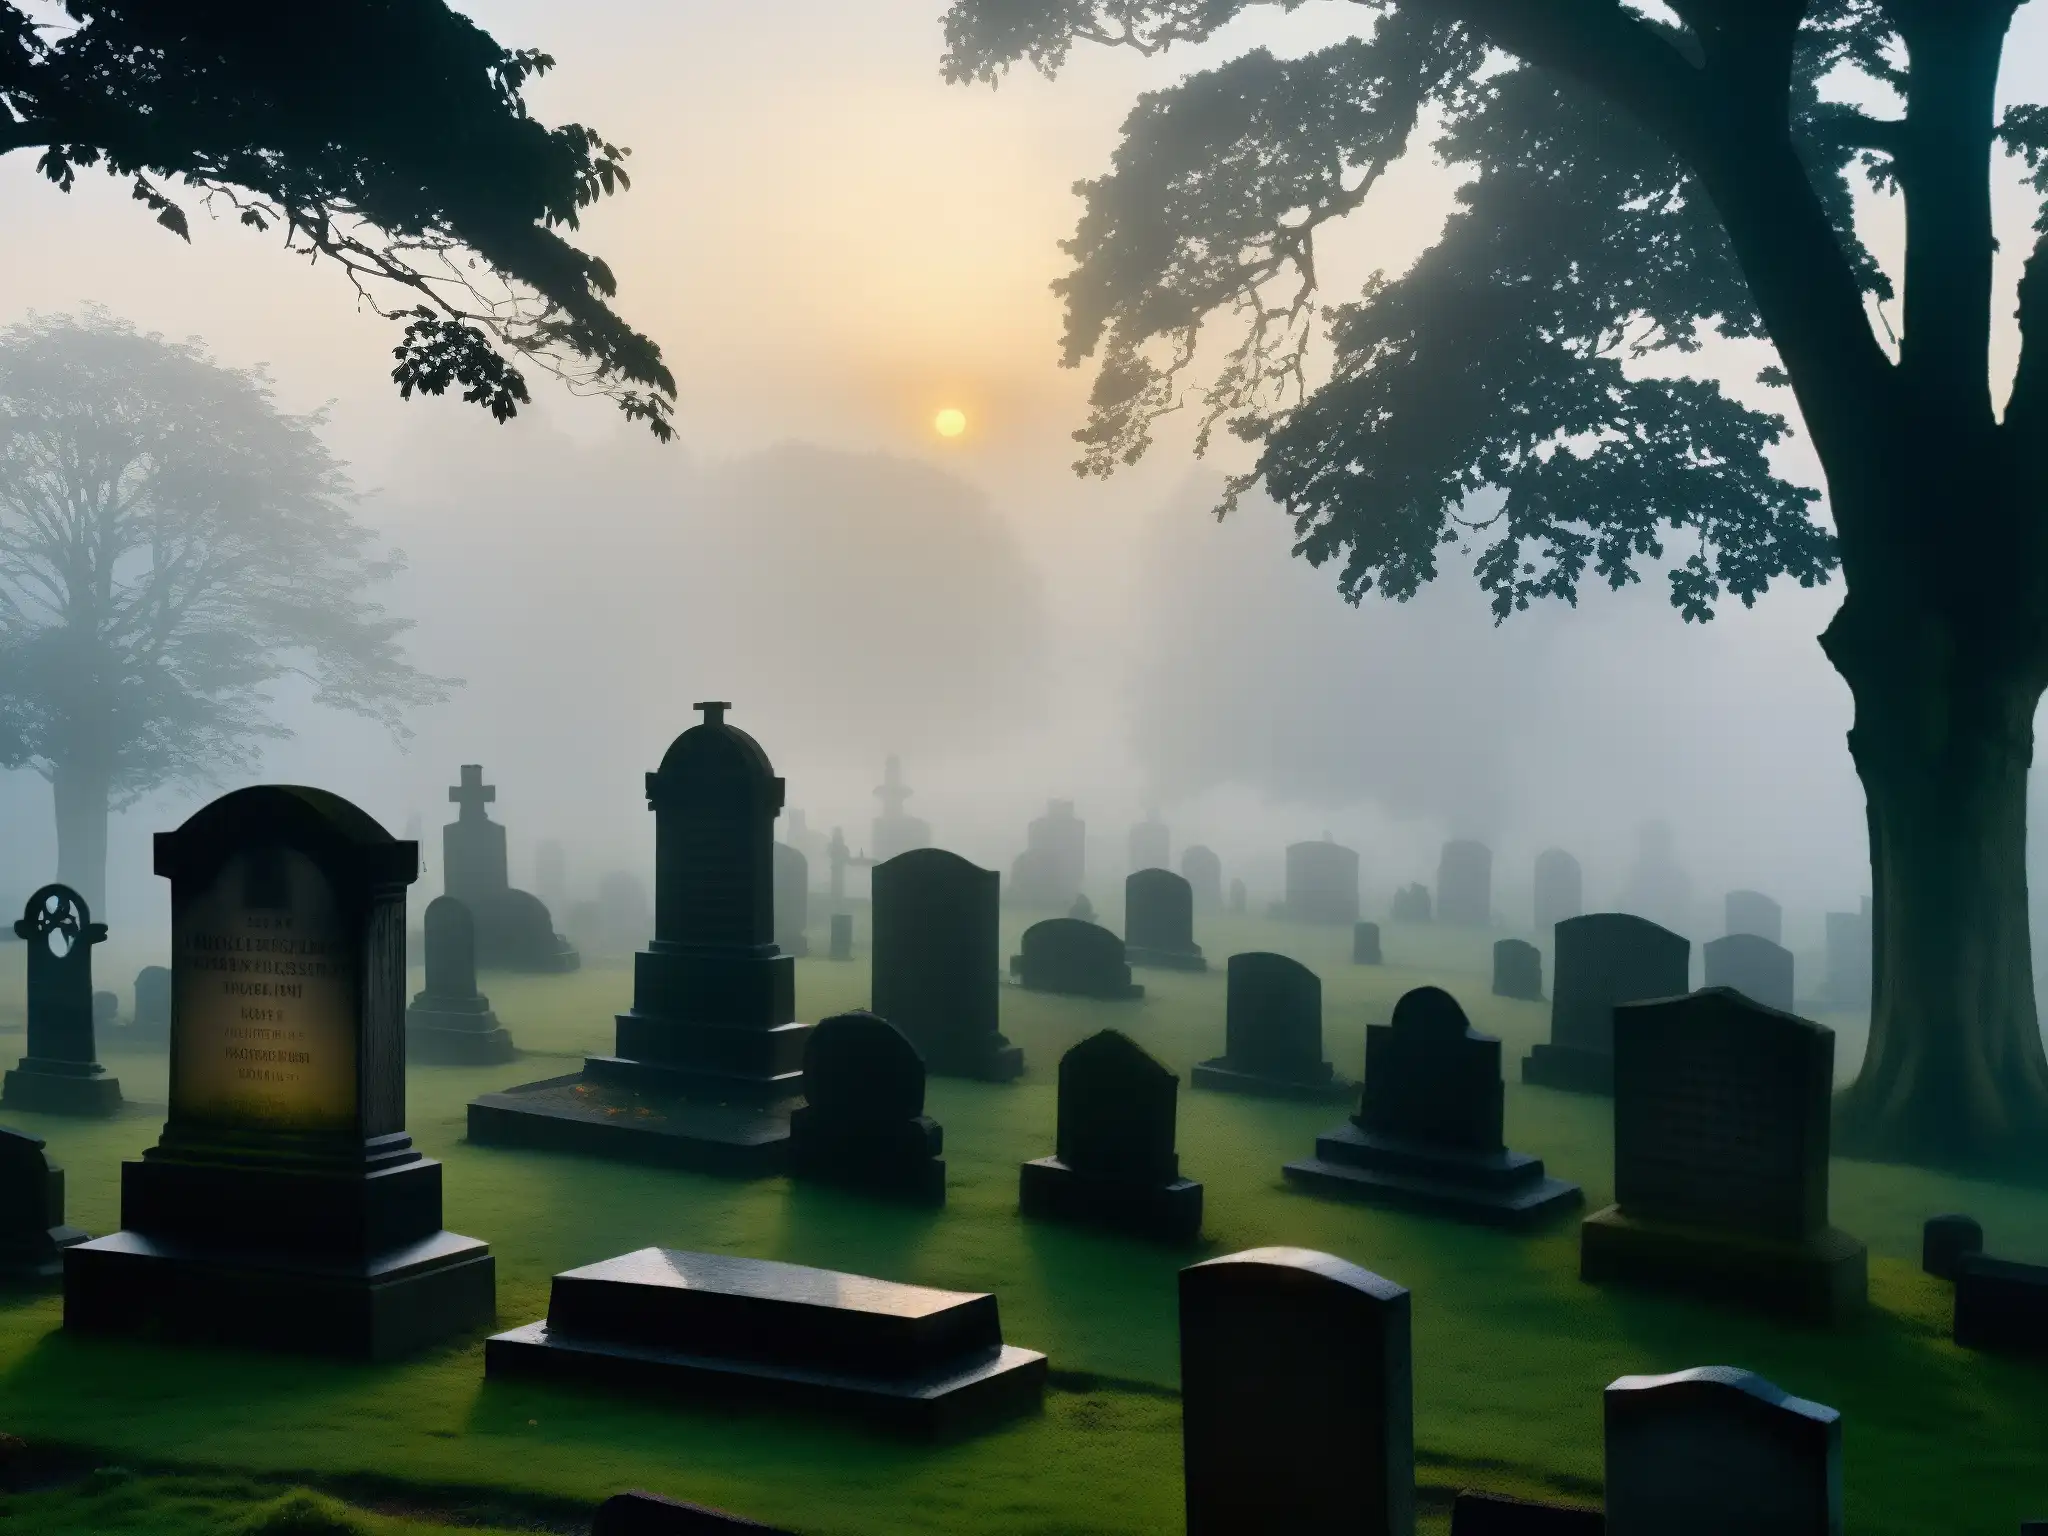 Siluetas de tumbas y mausoleos cubiertos de niebla al atardecer, mostrando la Presencia del Más Allá en Cementerio Lothian